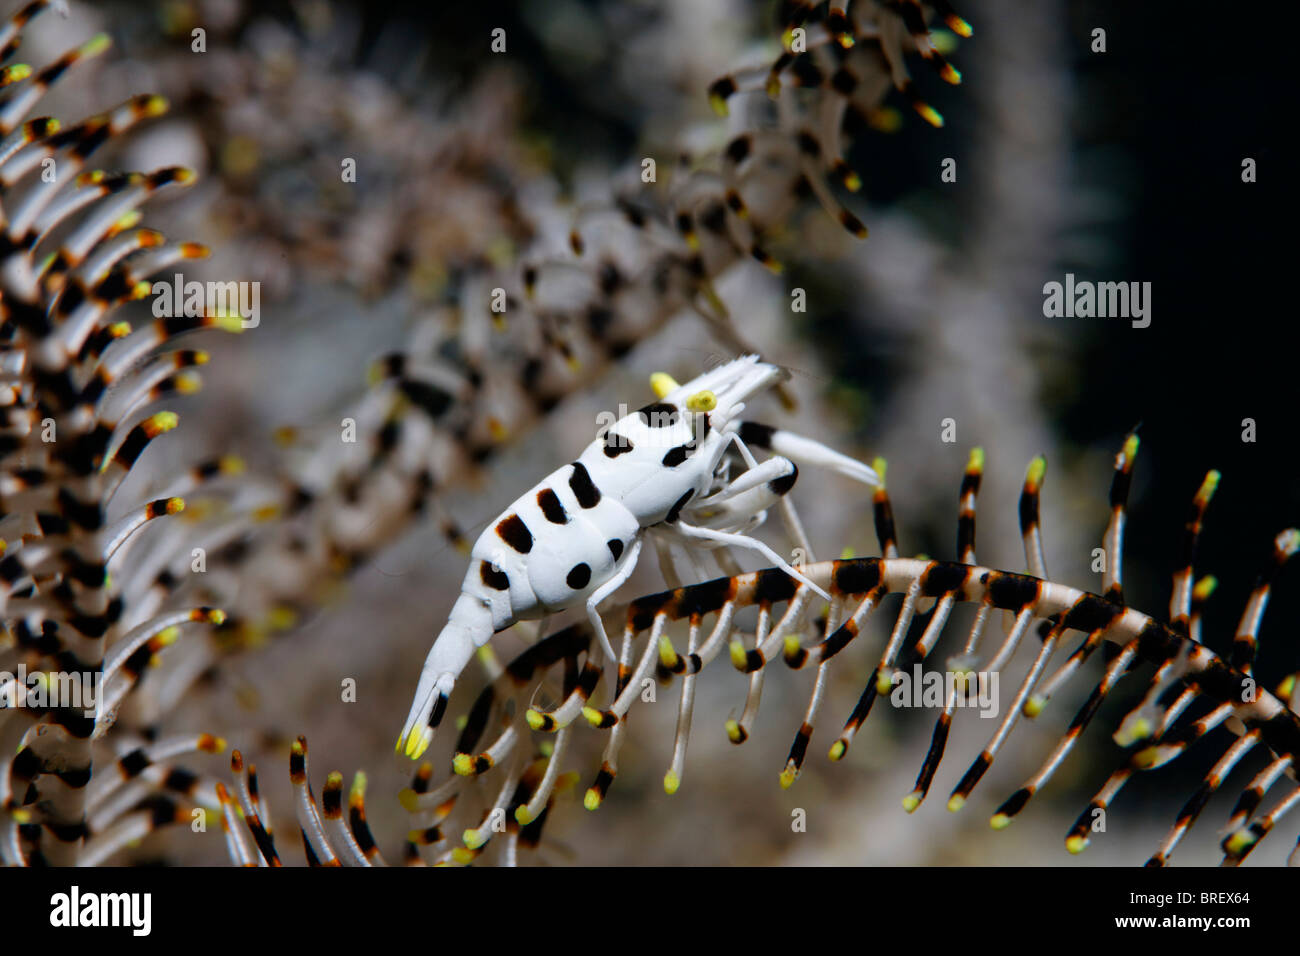 Peitschenkorallen Garnelen (Periclimenes Cornutus) auf eine Feder Stern, Gangga Island, Inseln Bangka, Nord-Sulawesi, Indonesien, Molukka Meer Stockfoto